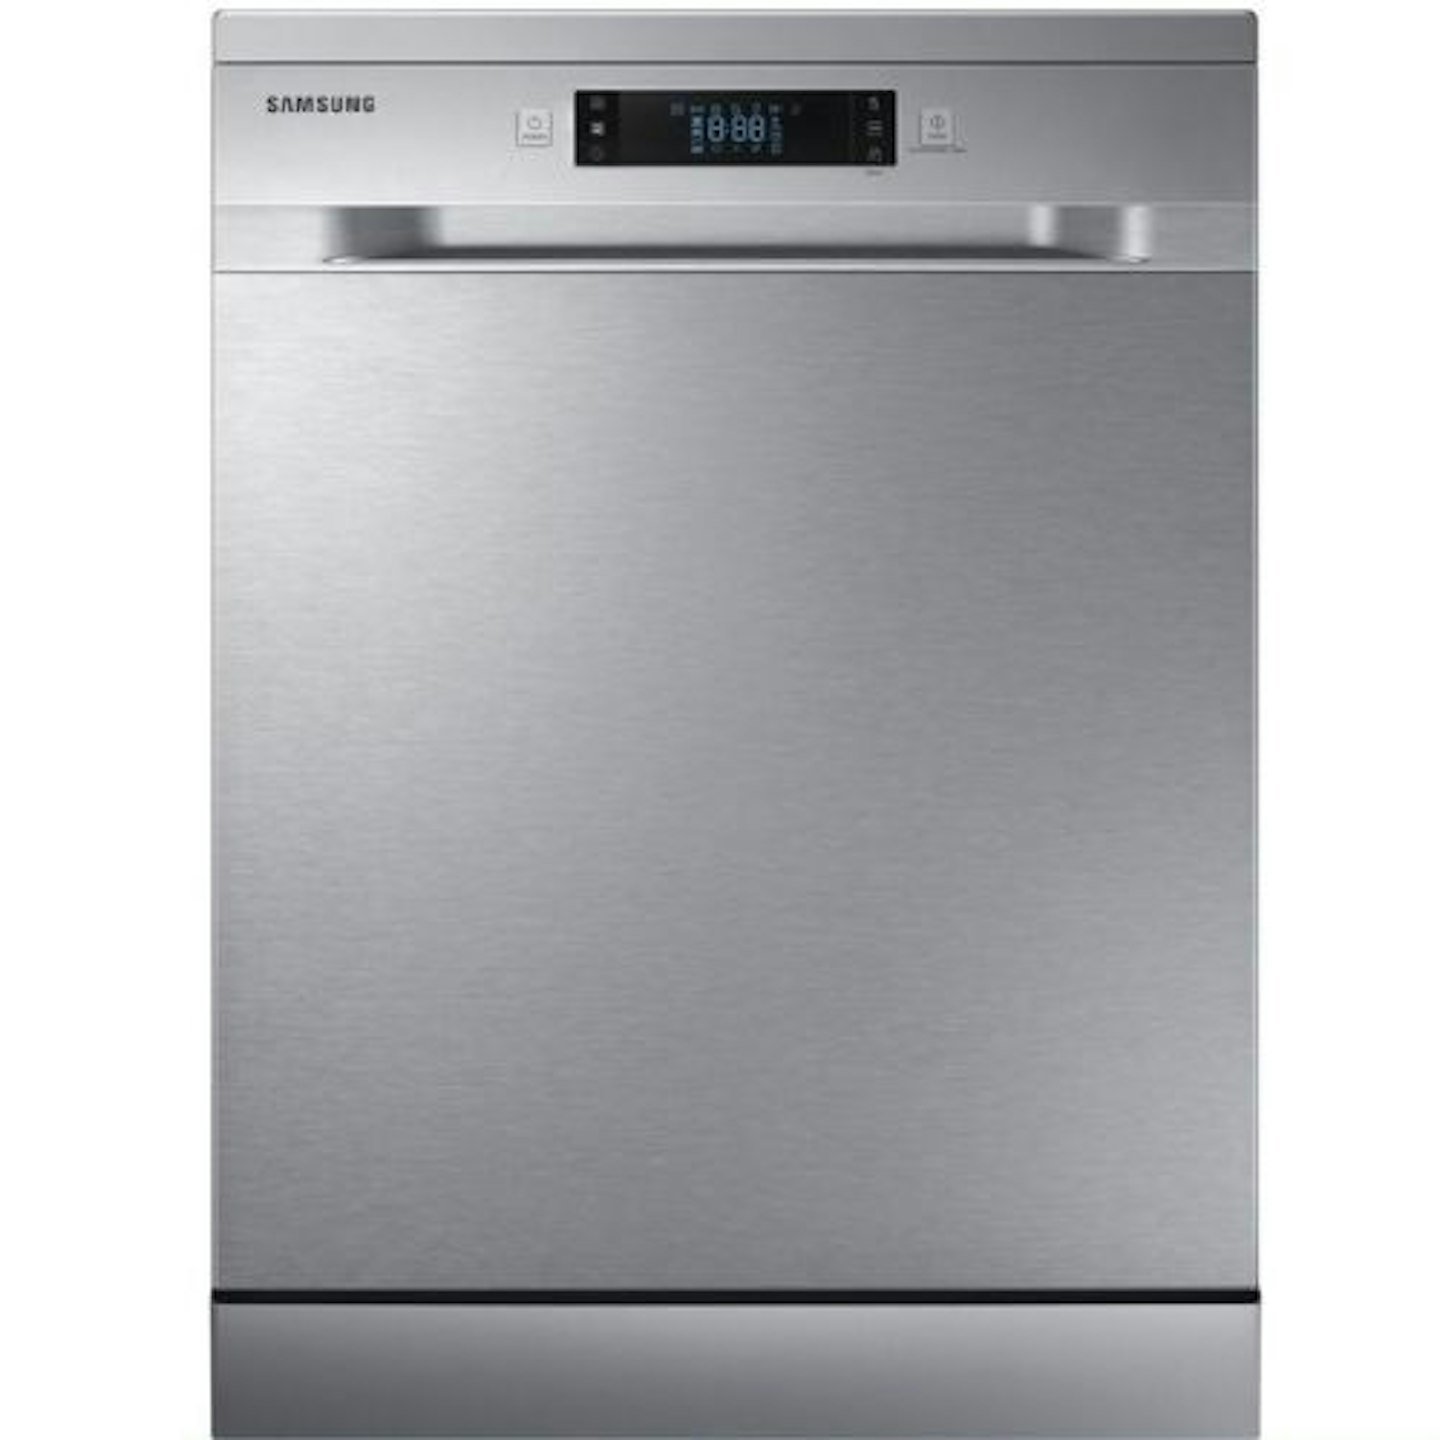 Samsung DW60M6050FS/EU Dishwasher